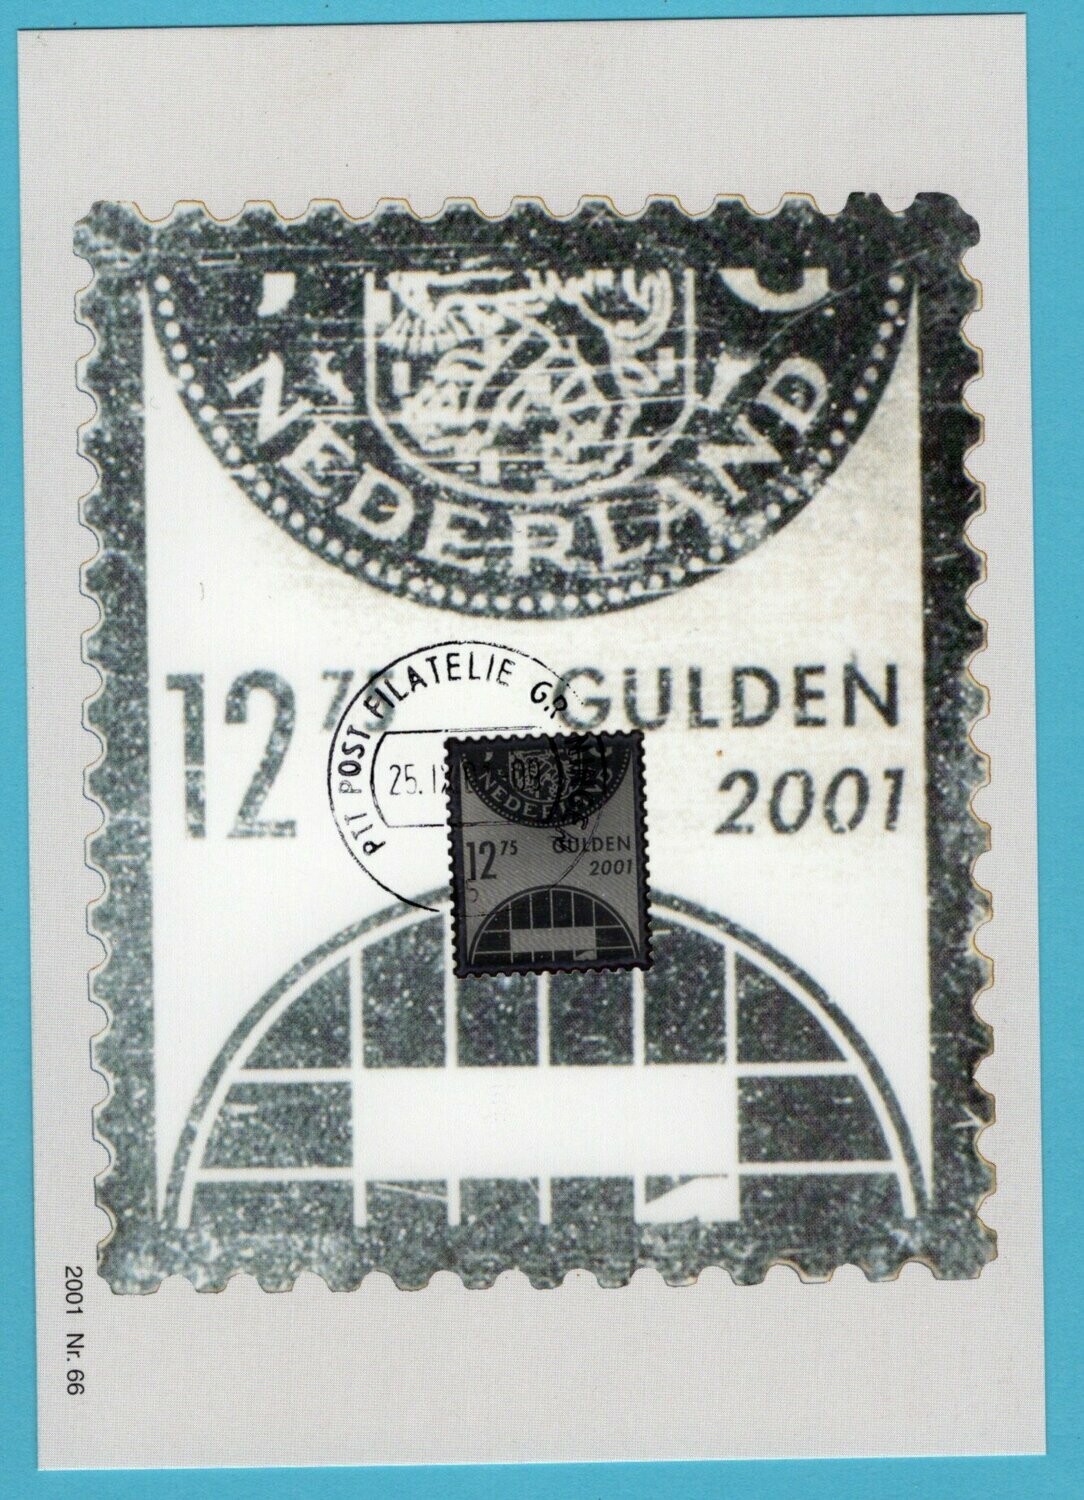 NEDERLAND maximumkaart 2001 zilveren R zegel